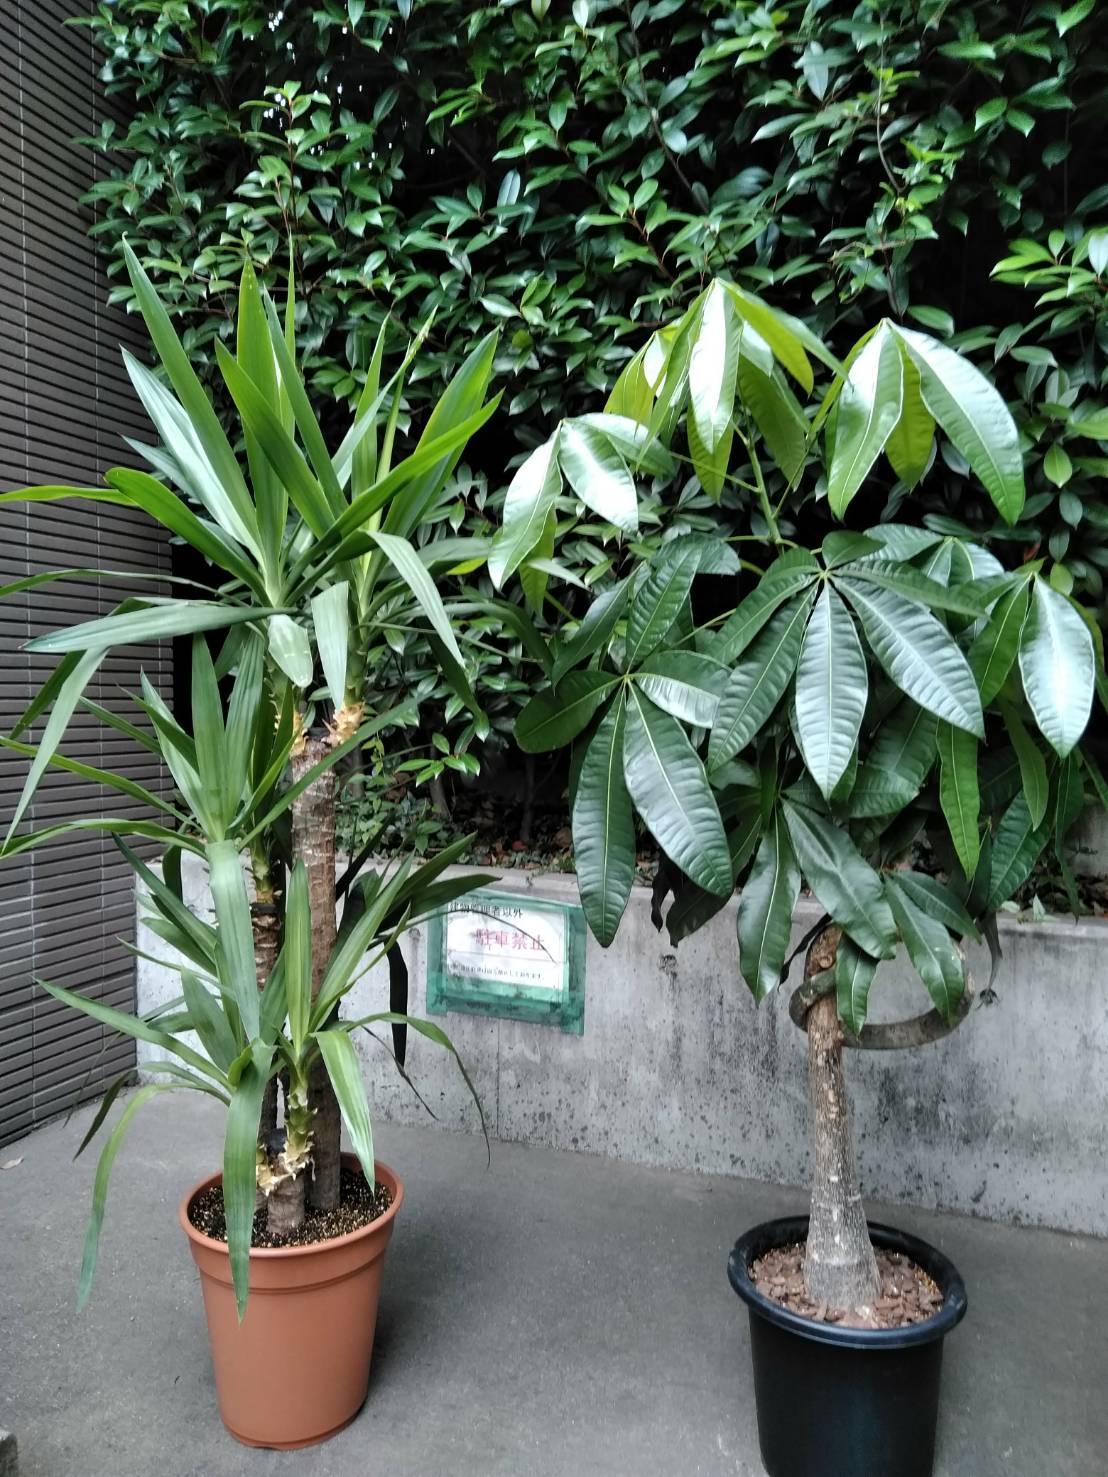 7 8 渋谷区 観葉植物 植え替え 鉢サイズ 2号 2 観葉植物のお手入れサービス